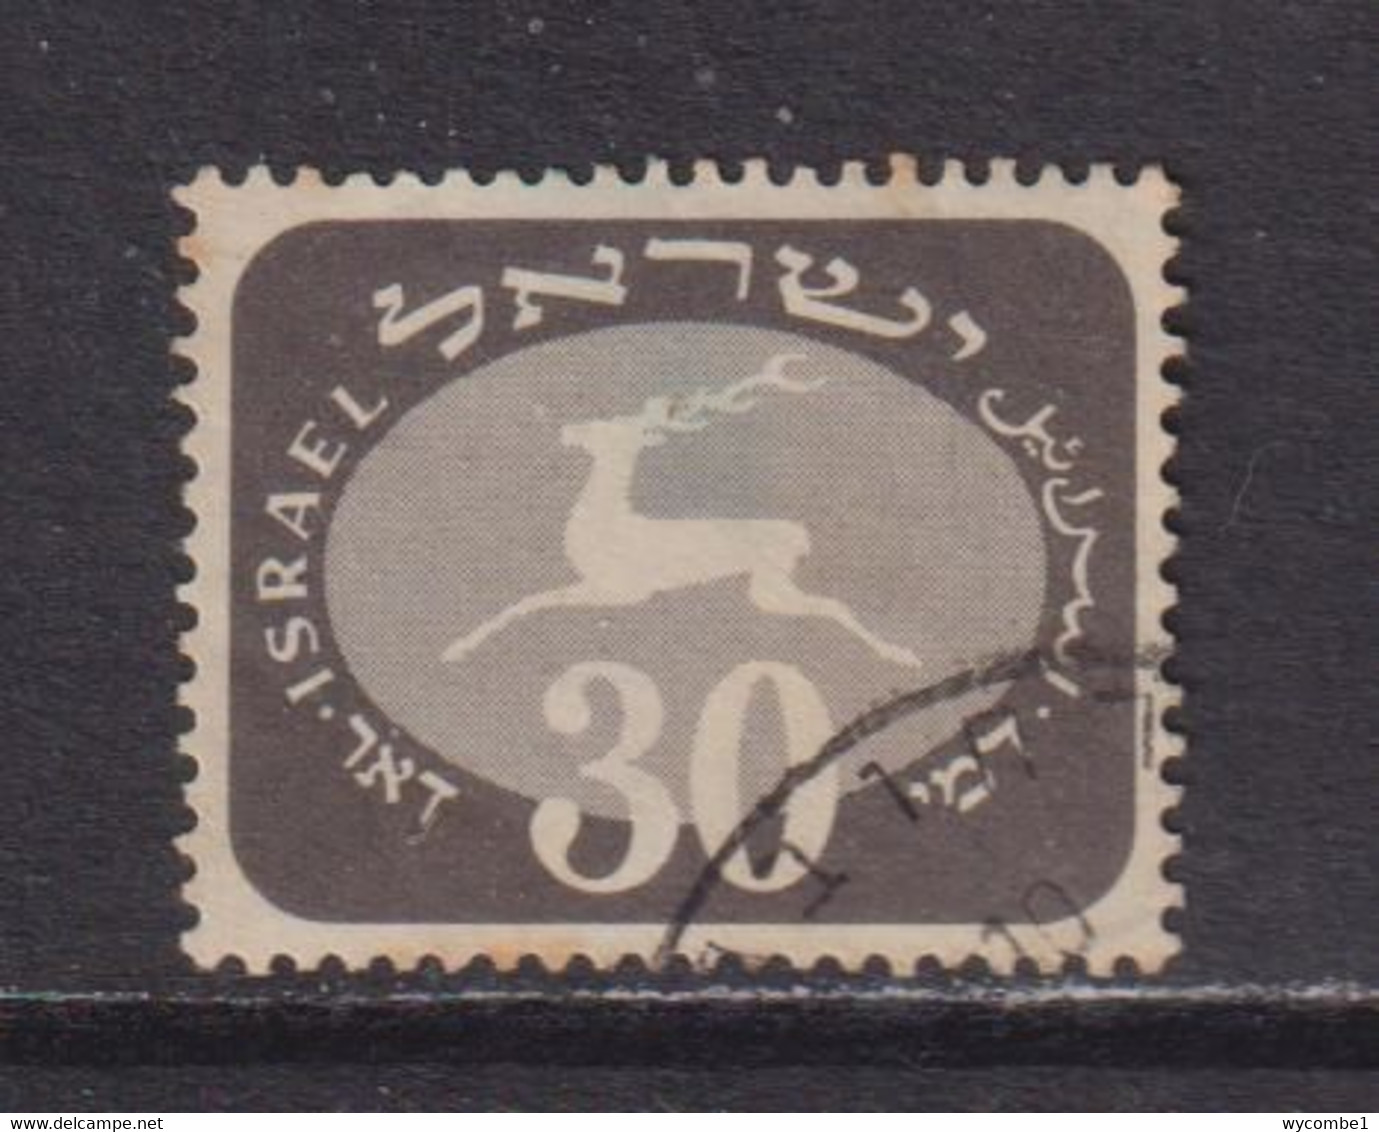 ISRAEL - 1952 Postage Due 30pr Used As Scan - Strafport